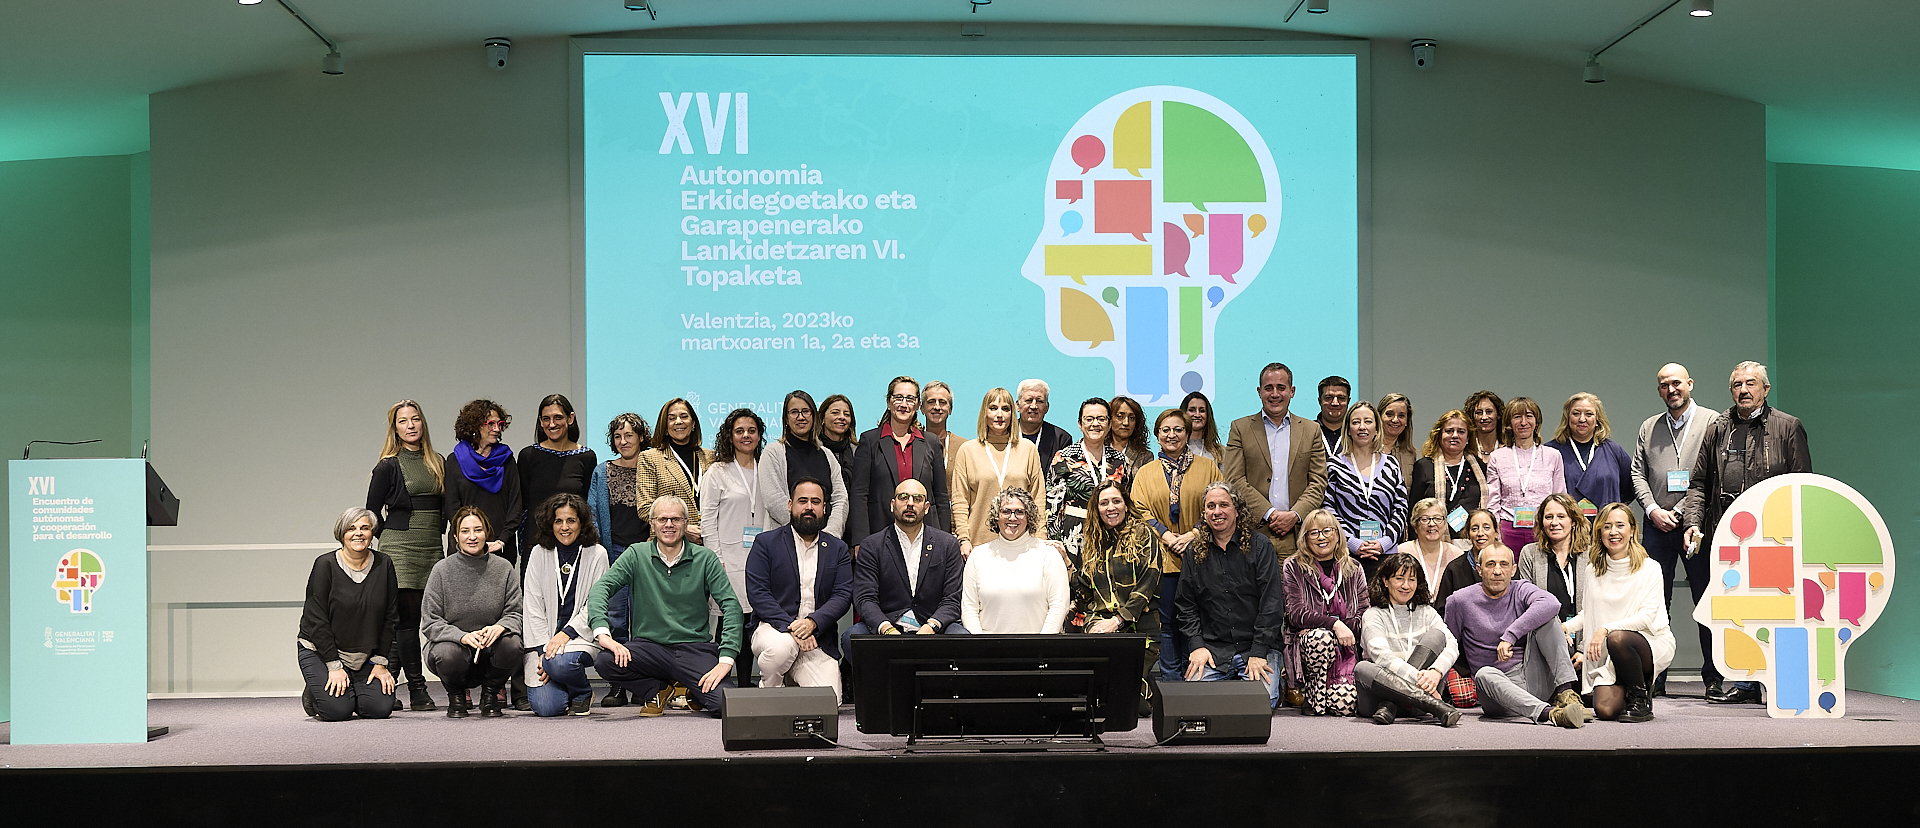 Imagen - La directora de la Agencia Asturiana de Cooperación al Desarrollo participa en el XVI Encuentro de Comunidades Autónomas y Cooperación al Desarrollo que se celebra del 1 al 3 de marzo en Valencia.